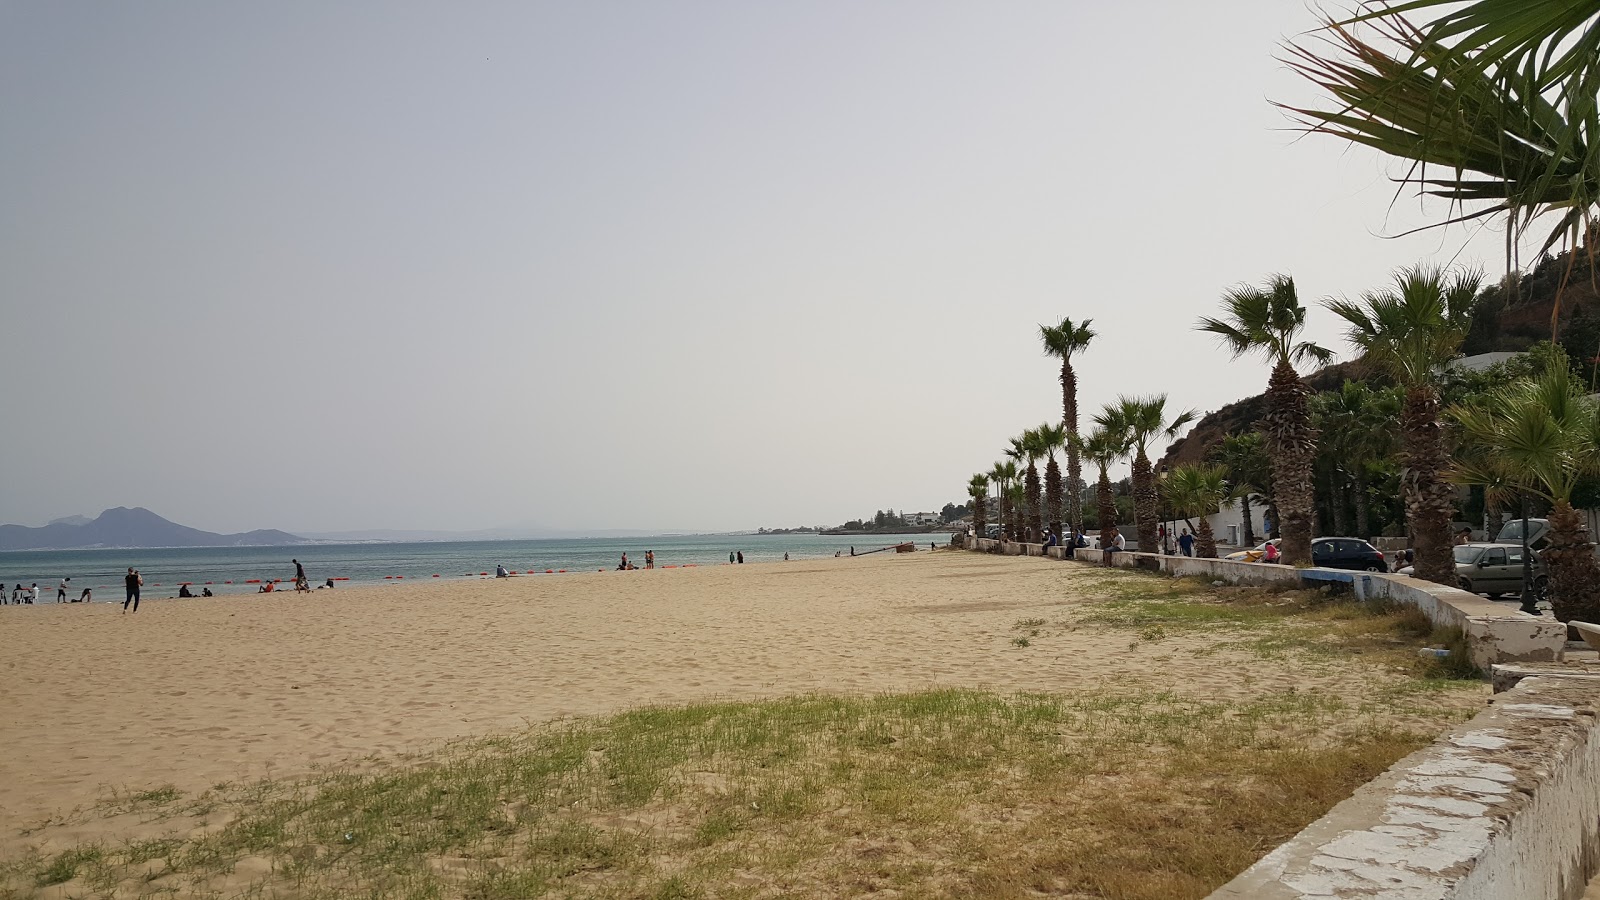 Fotografie cu Sidi Bou Said Beach - locul popular printre cunoscătorii de relaxare